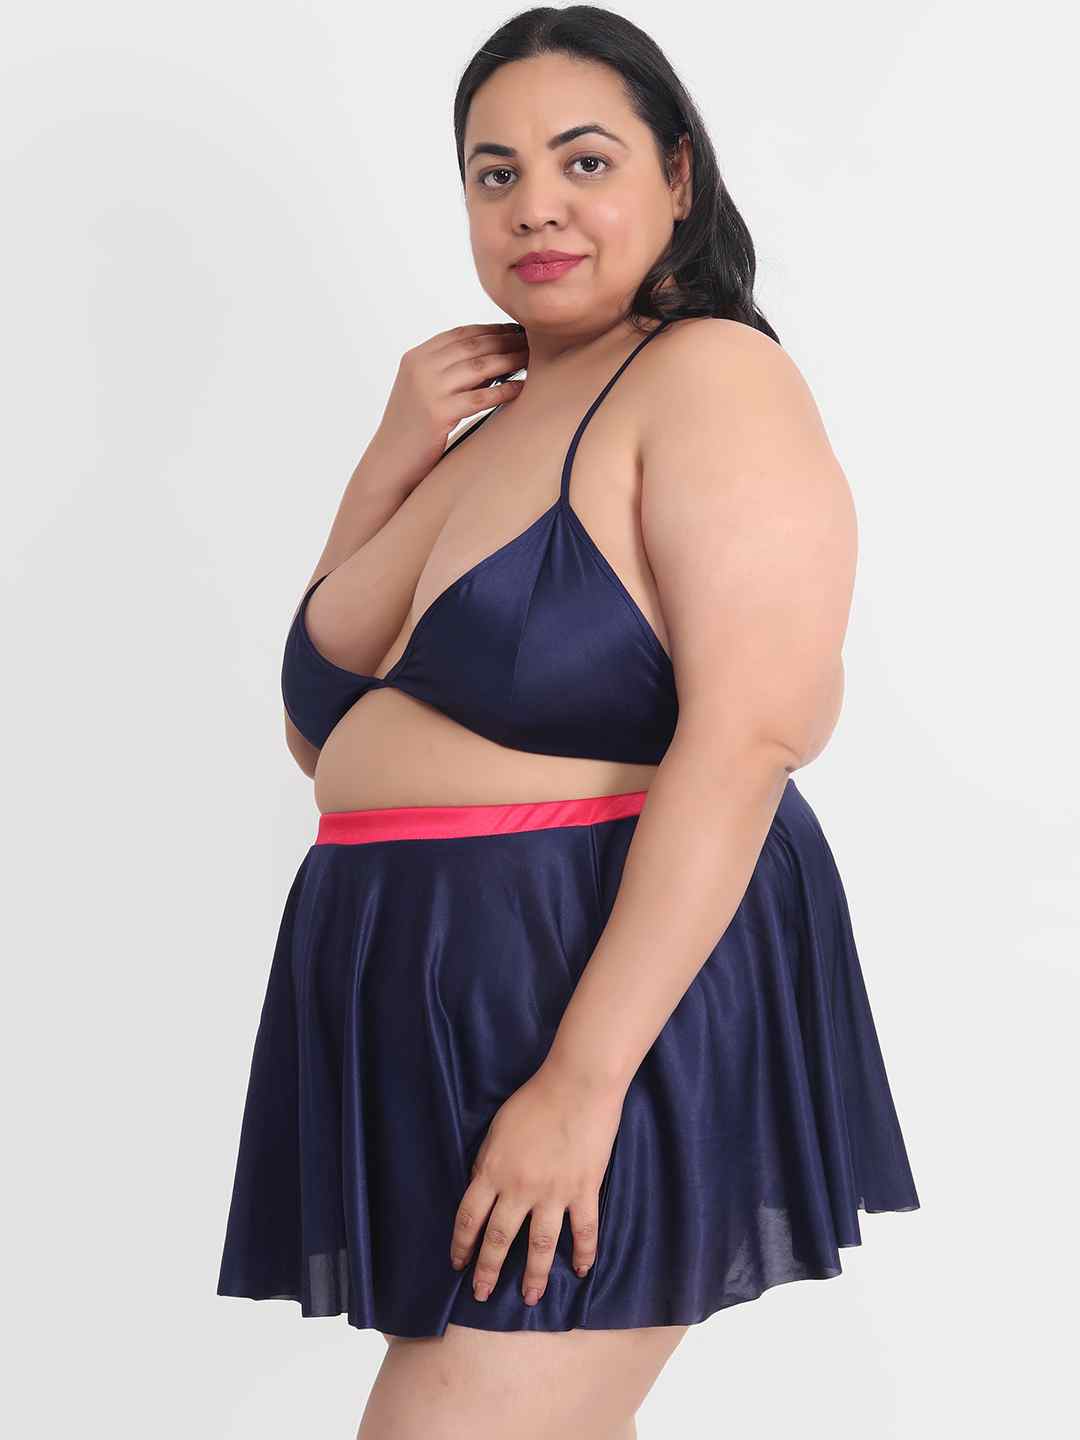 Plus Size Sexy 3 Piece Babydoll Bikini Dress for Honeymoon 203N